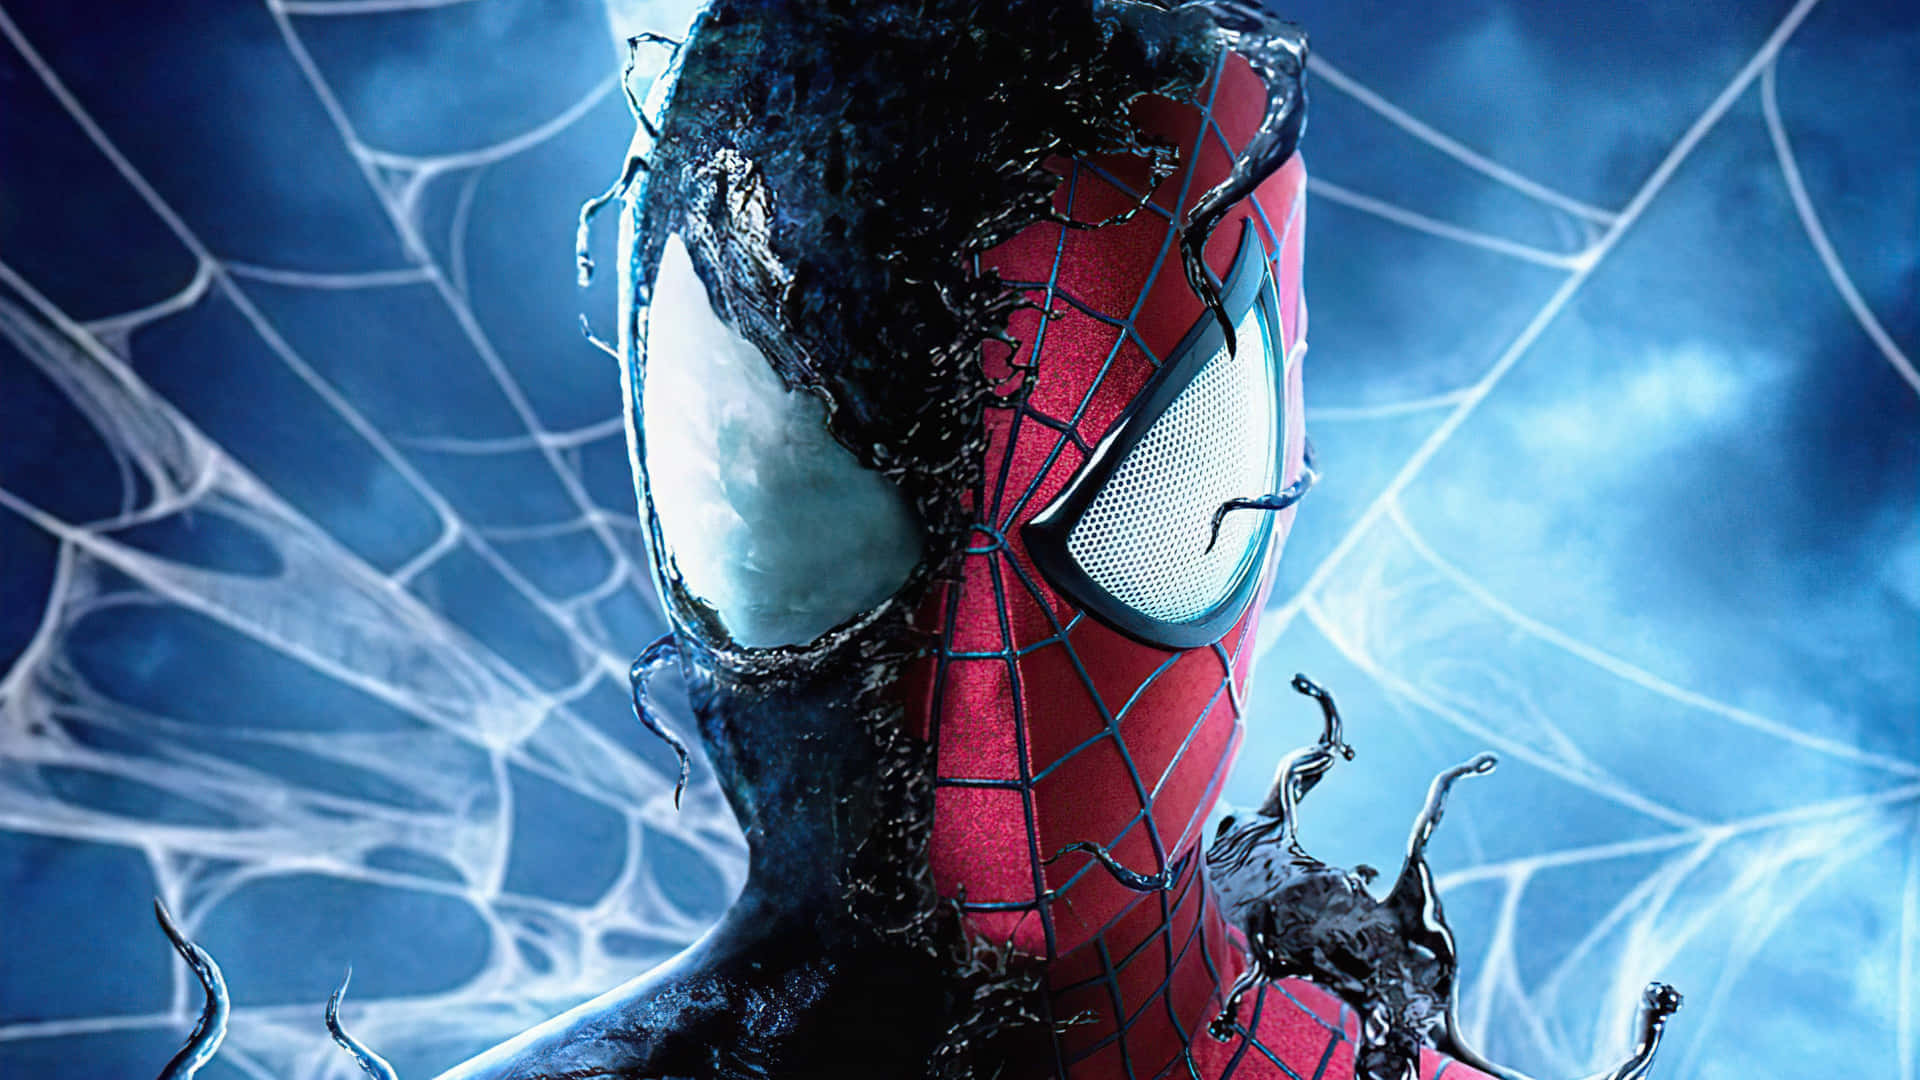 Symbiotesuit Spiderman Pfp - Imagen De Perfil De Spiderman Con Traje Simbionte. Fondo de pantalla